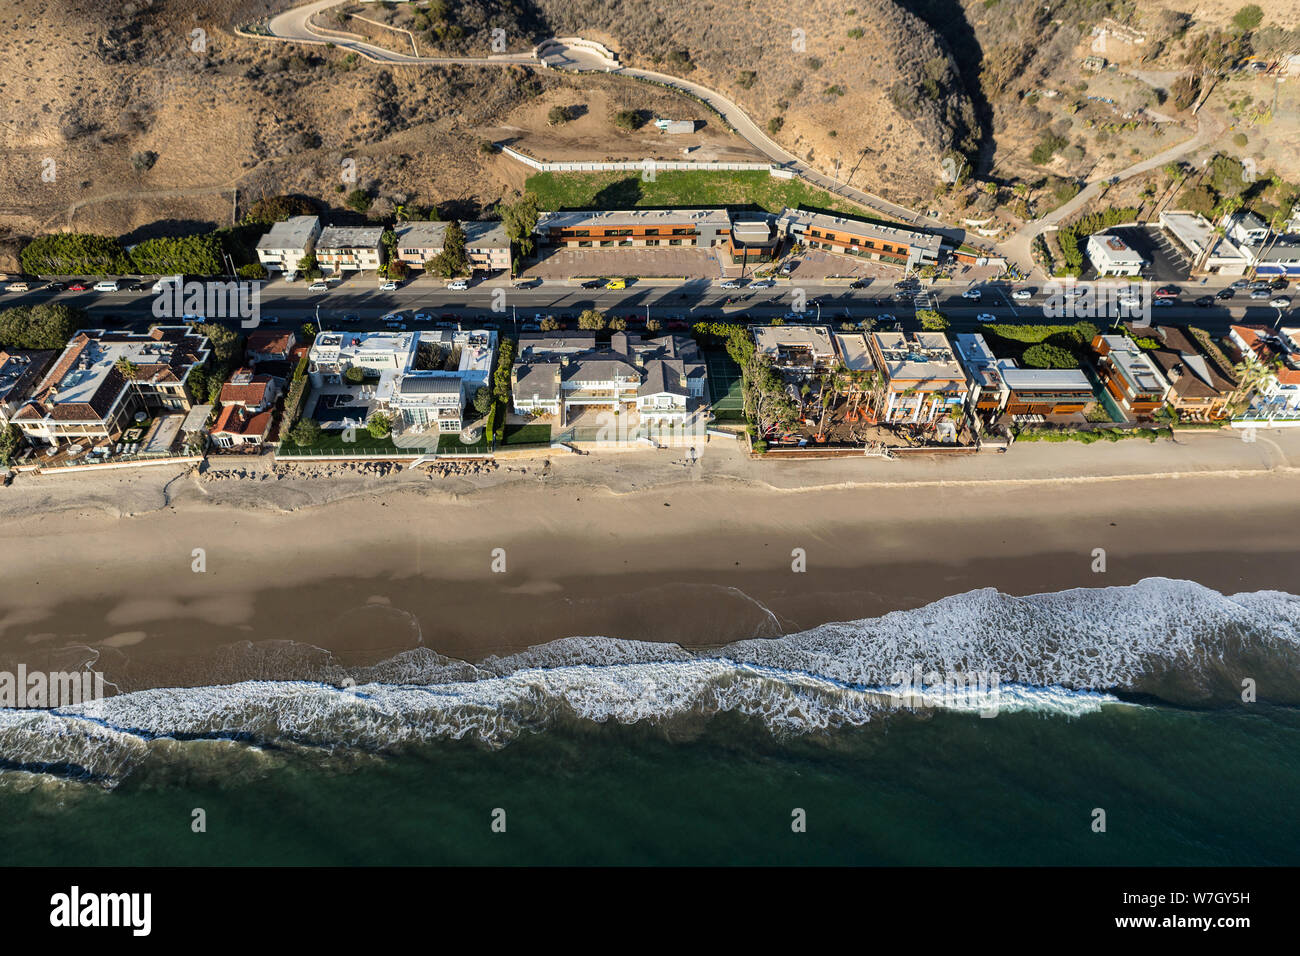 Malibu, Californie, Etats-Unis - le 17 décembre 2016 : Vue aérienne de Grand Beach mansions sur autoroute de la côte Pacifique au nord de Los Angeles. Banque D'Images